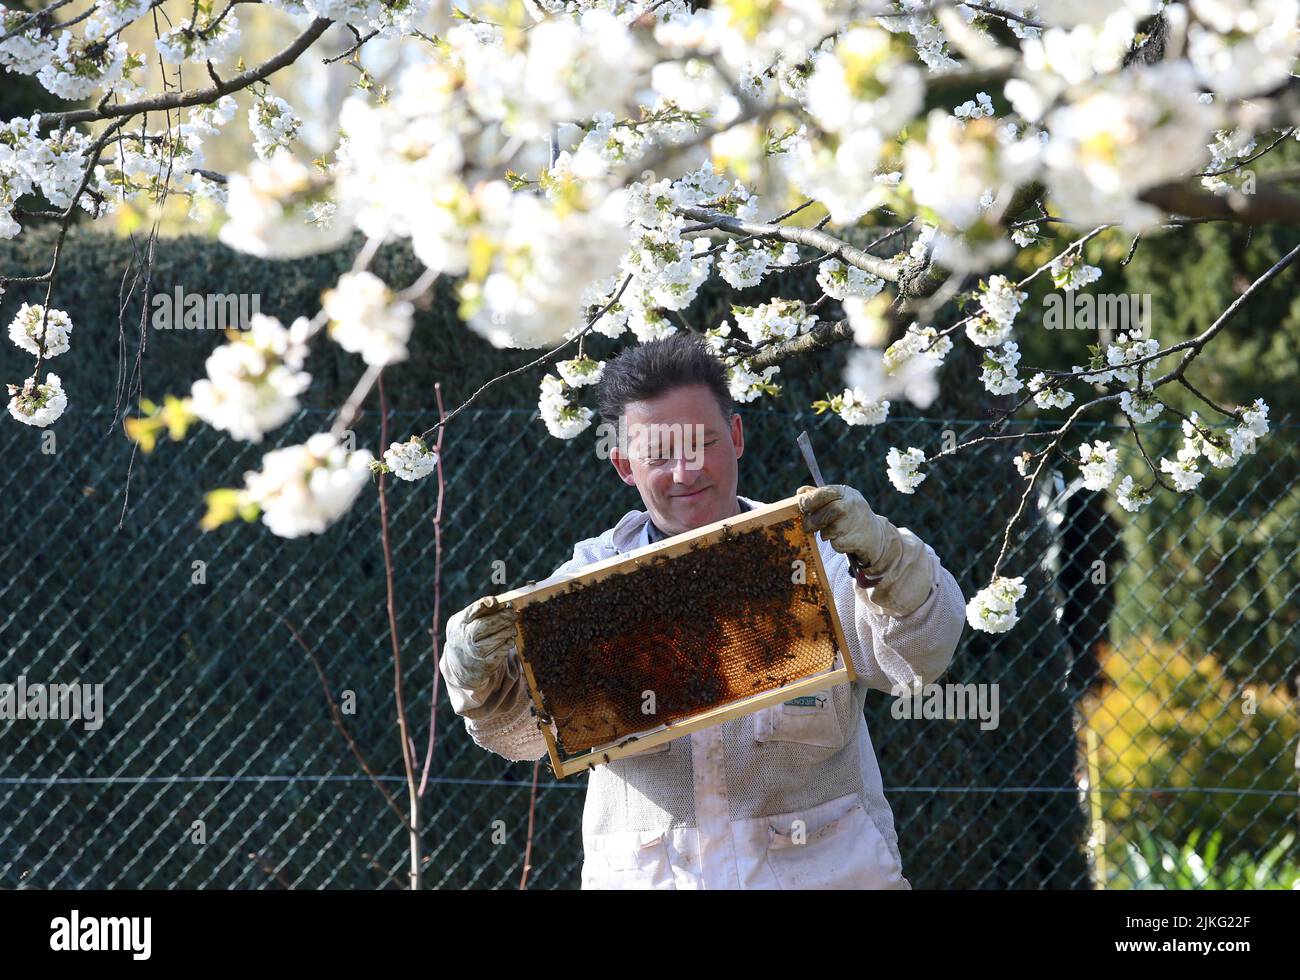 17.04.2022, Germania, Brandeburgo, Neuenhagen - Beekeeper guarda contentatamente sotto un albero di ciliegi bluastri ad un nido d'ape della sua colonia di api. 00S220417D335 Foto Stock